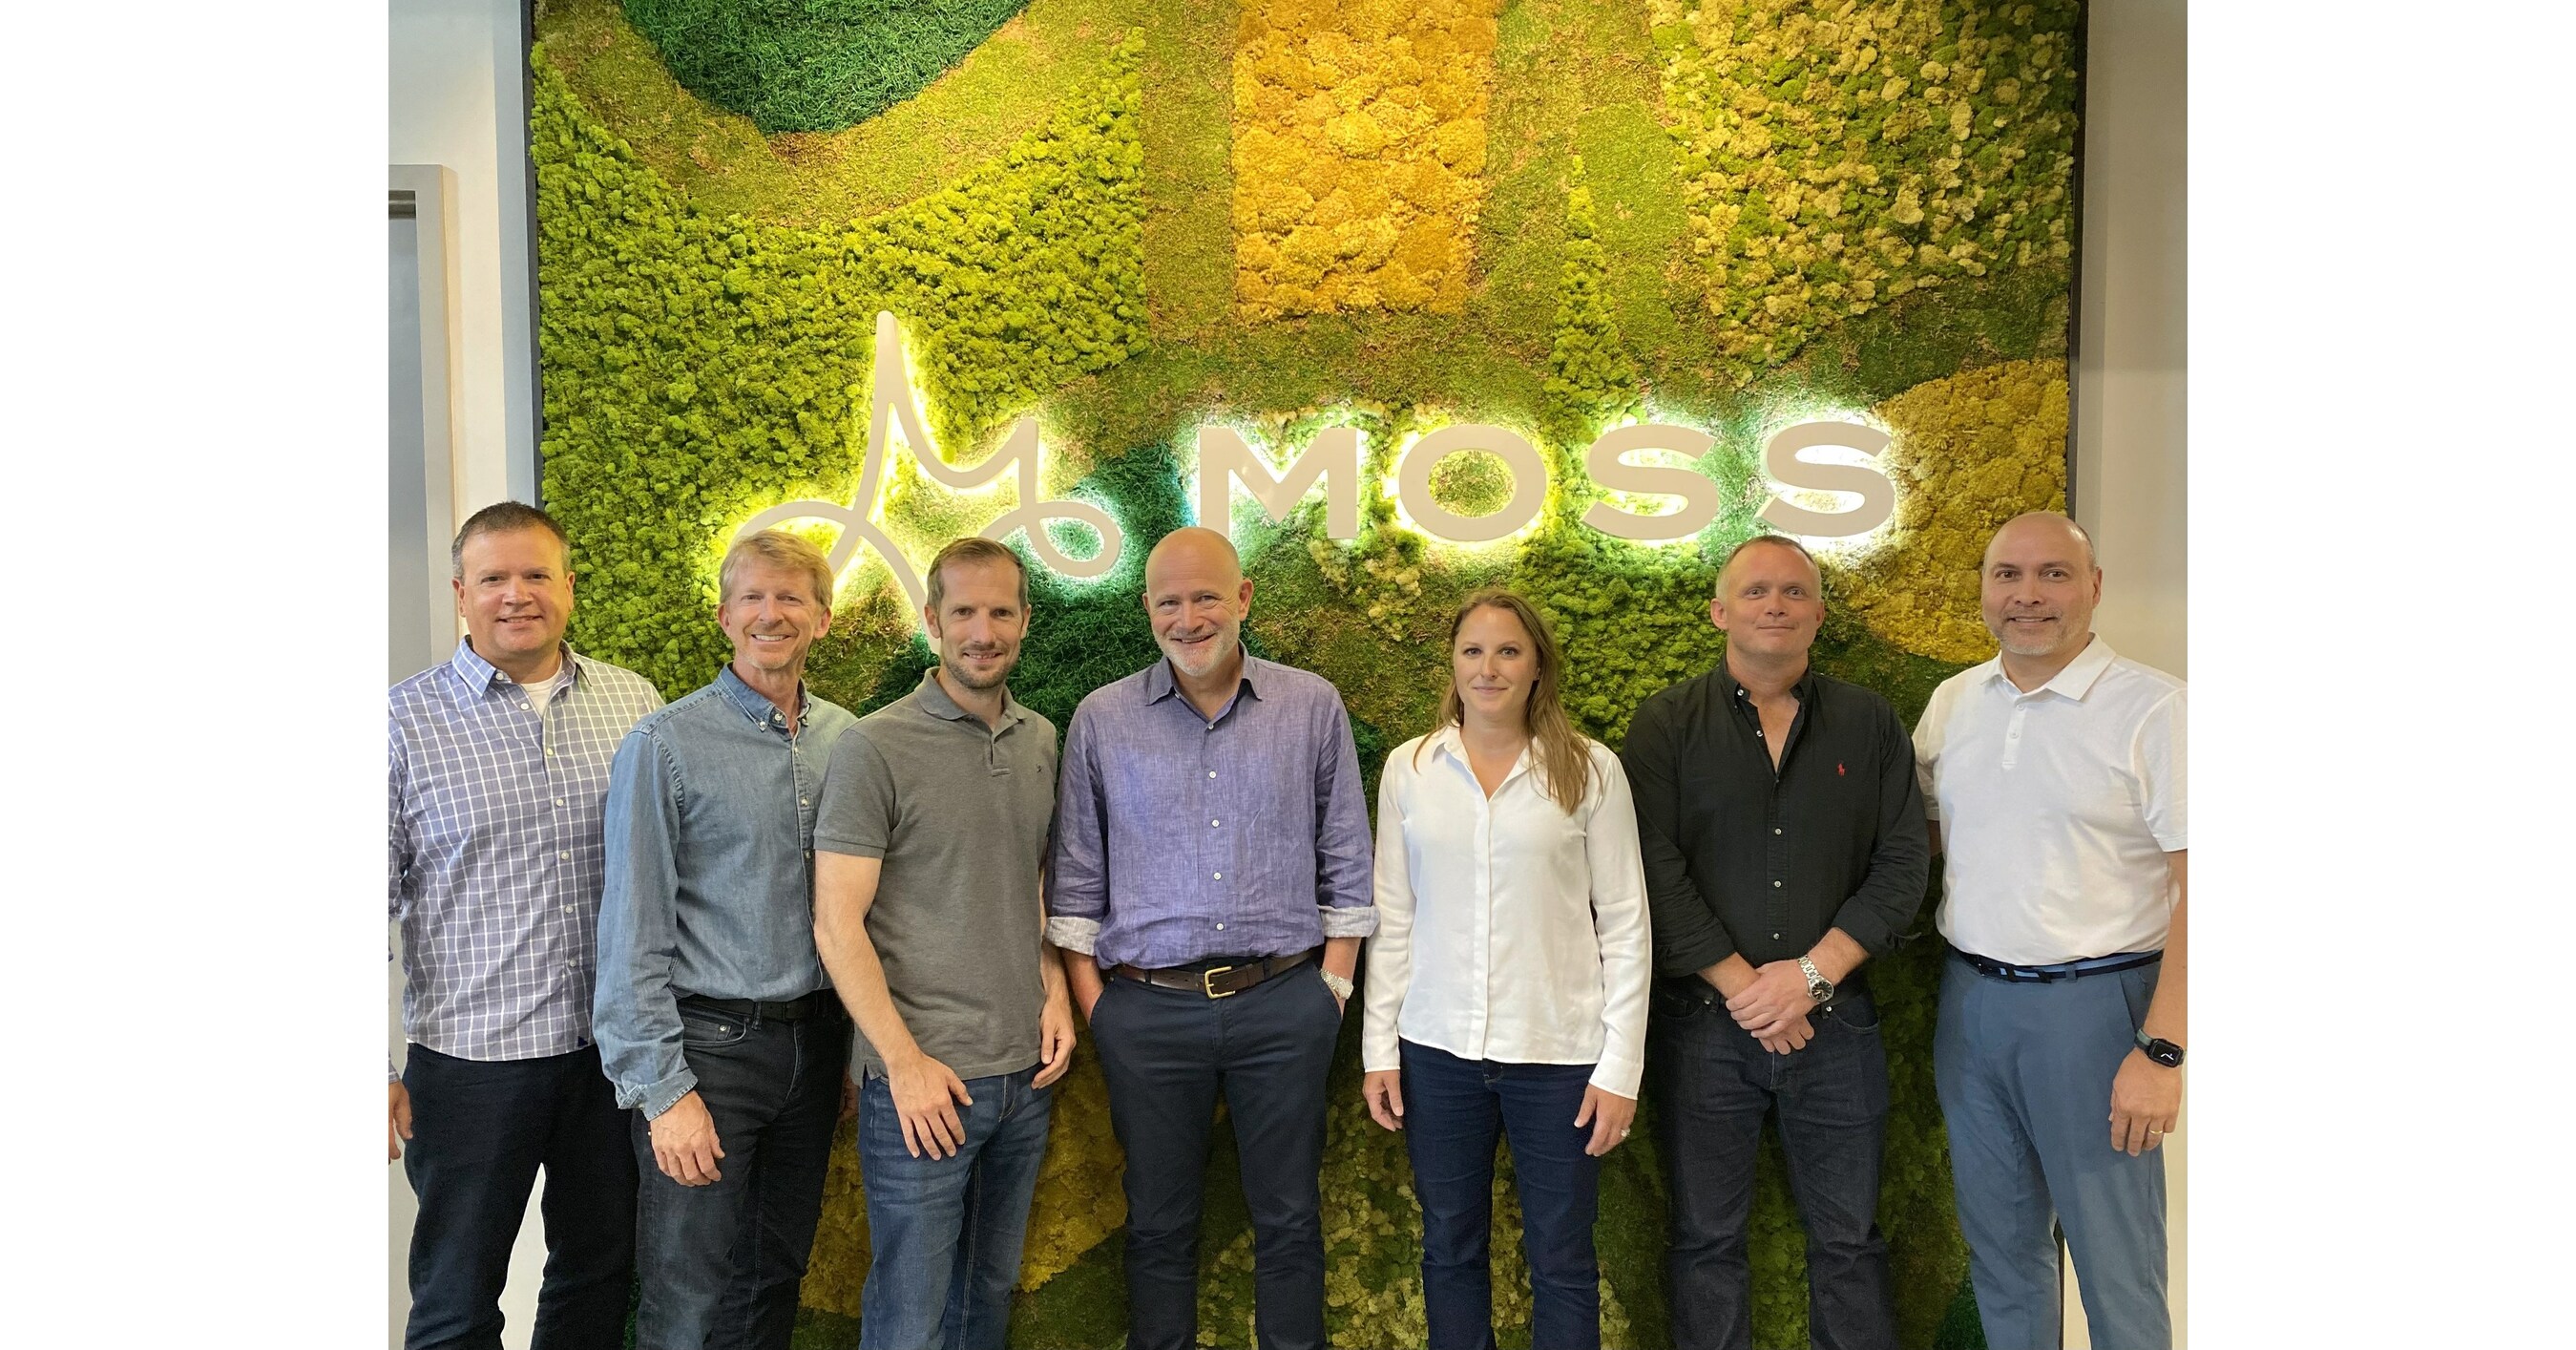 Moss, wiodąca firma zajmująca się doświadczeniem marki, rozszerza działalność na Wielką Brytanię poprzez przejęcie MacroArt